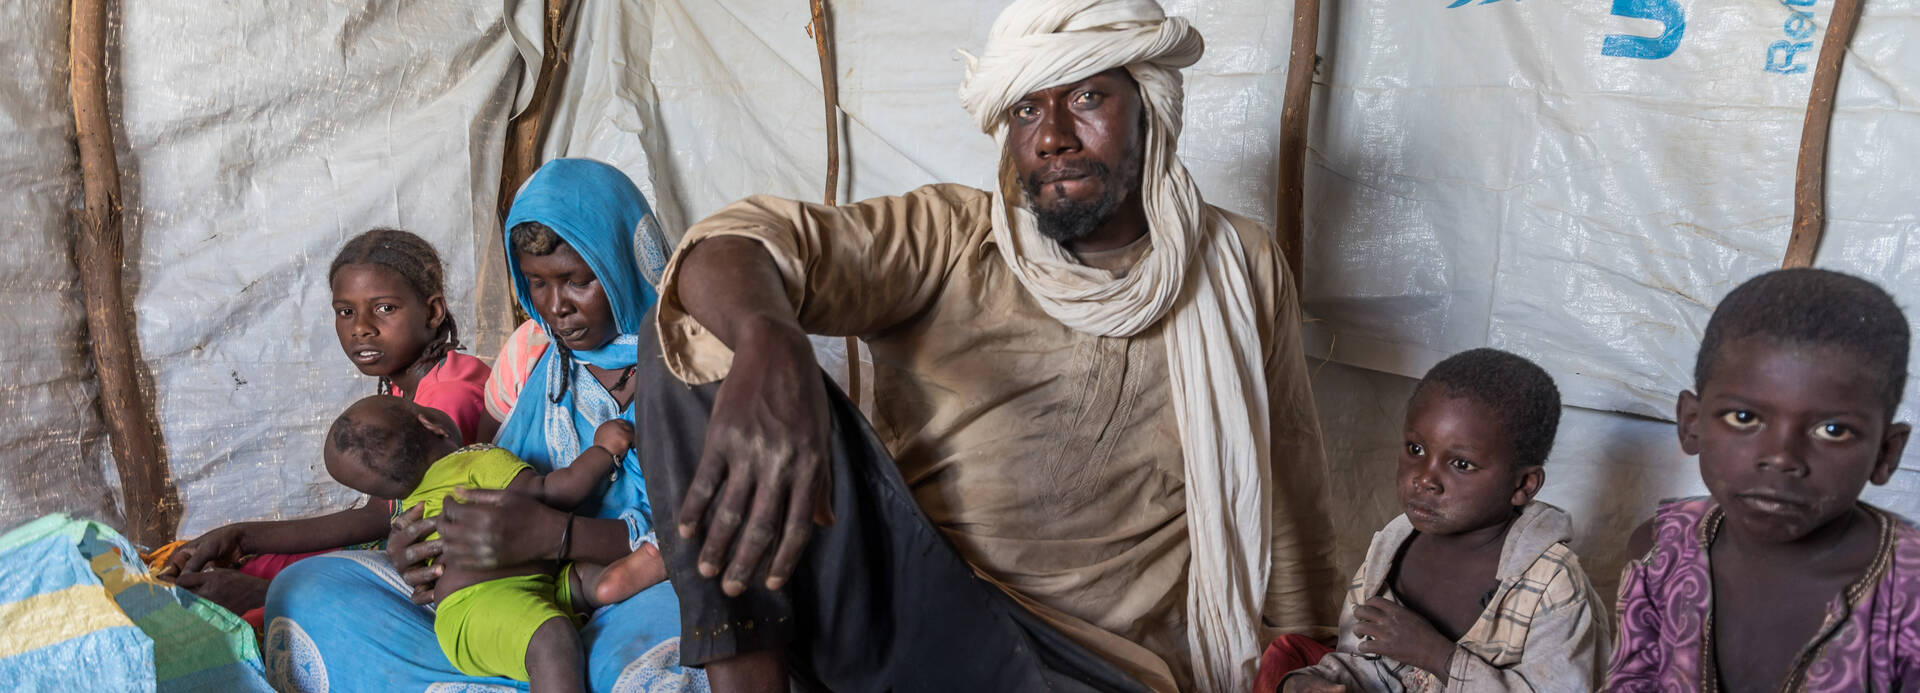 Irza und seine Familie sitzen in ihrer Zeltunterkunft im Niger.